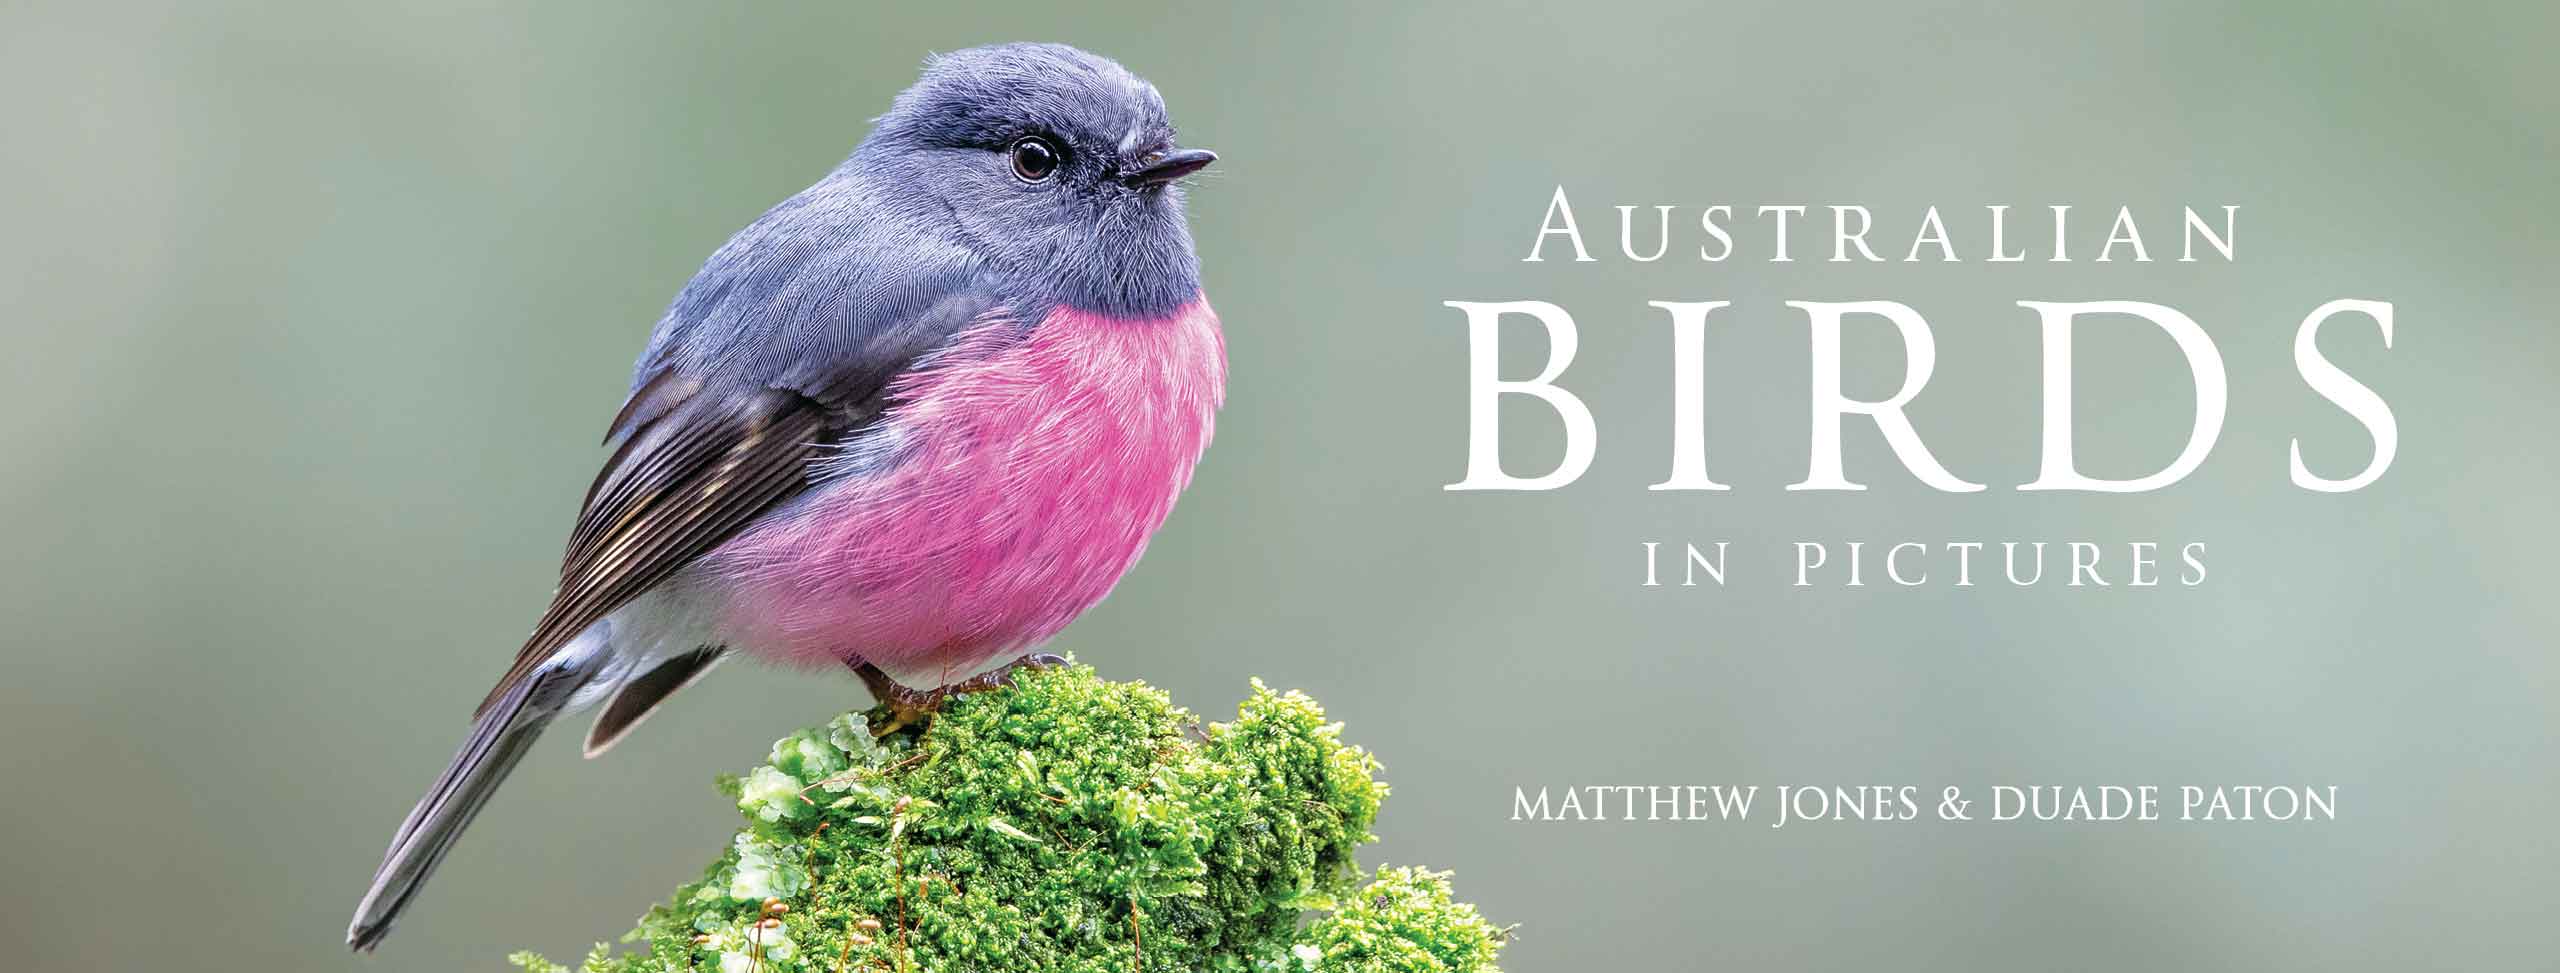 Australian Birds in Pictures